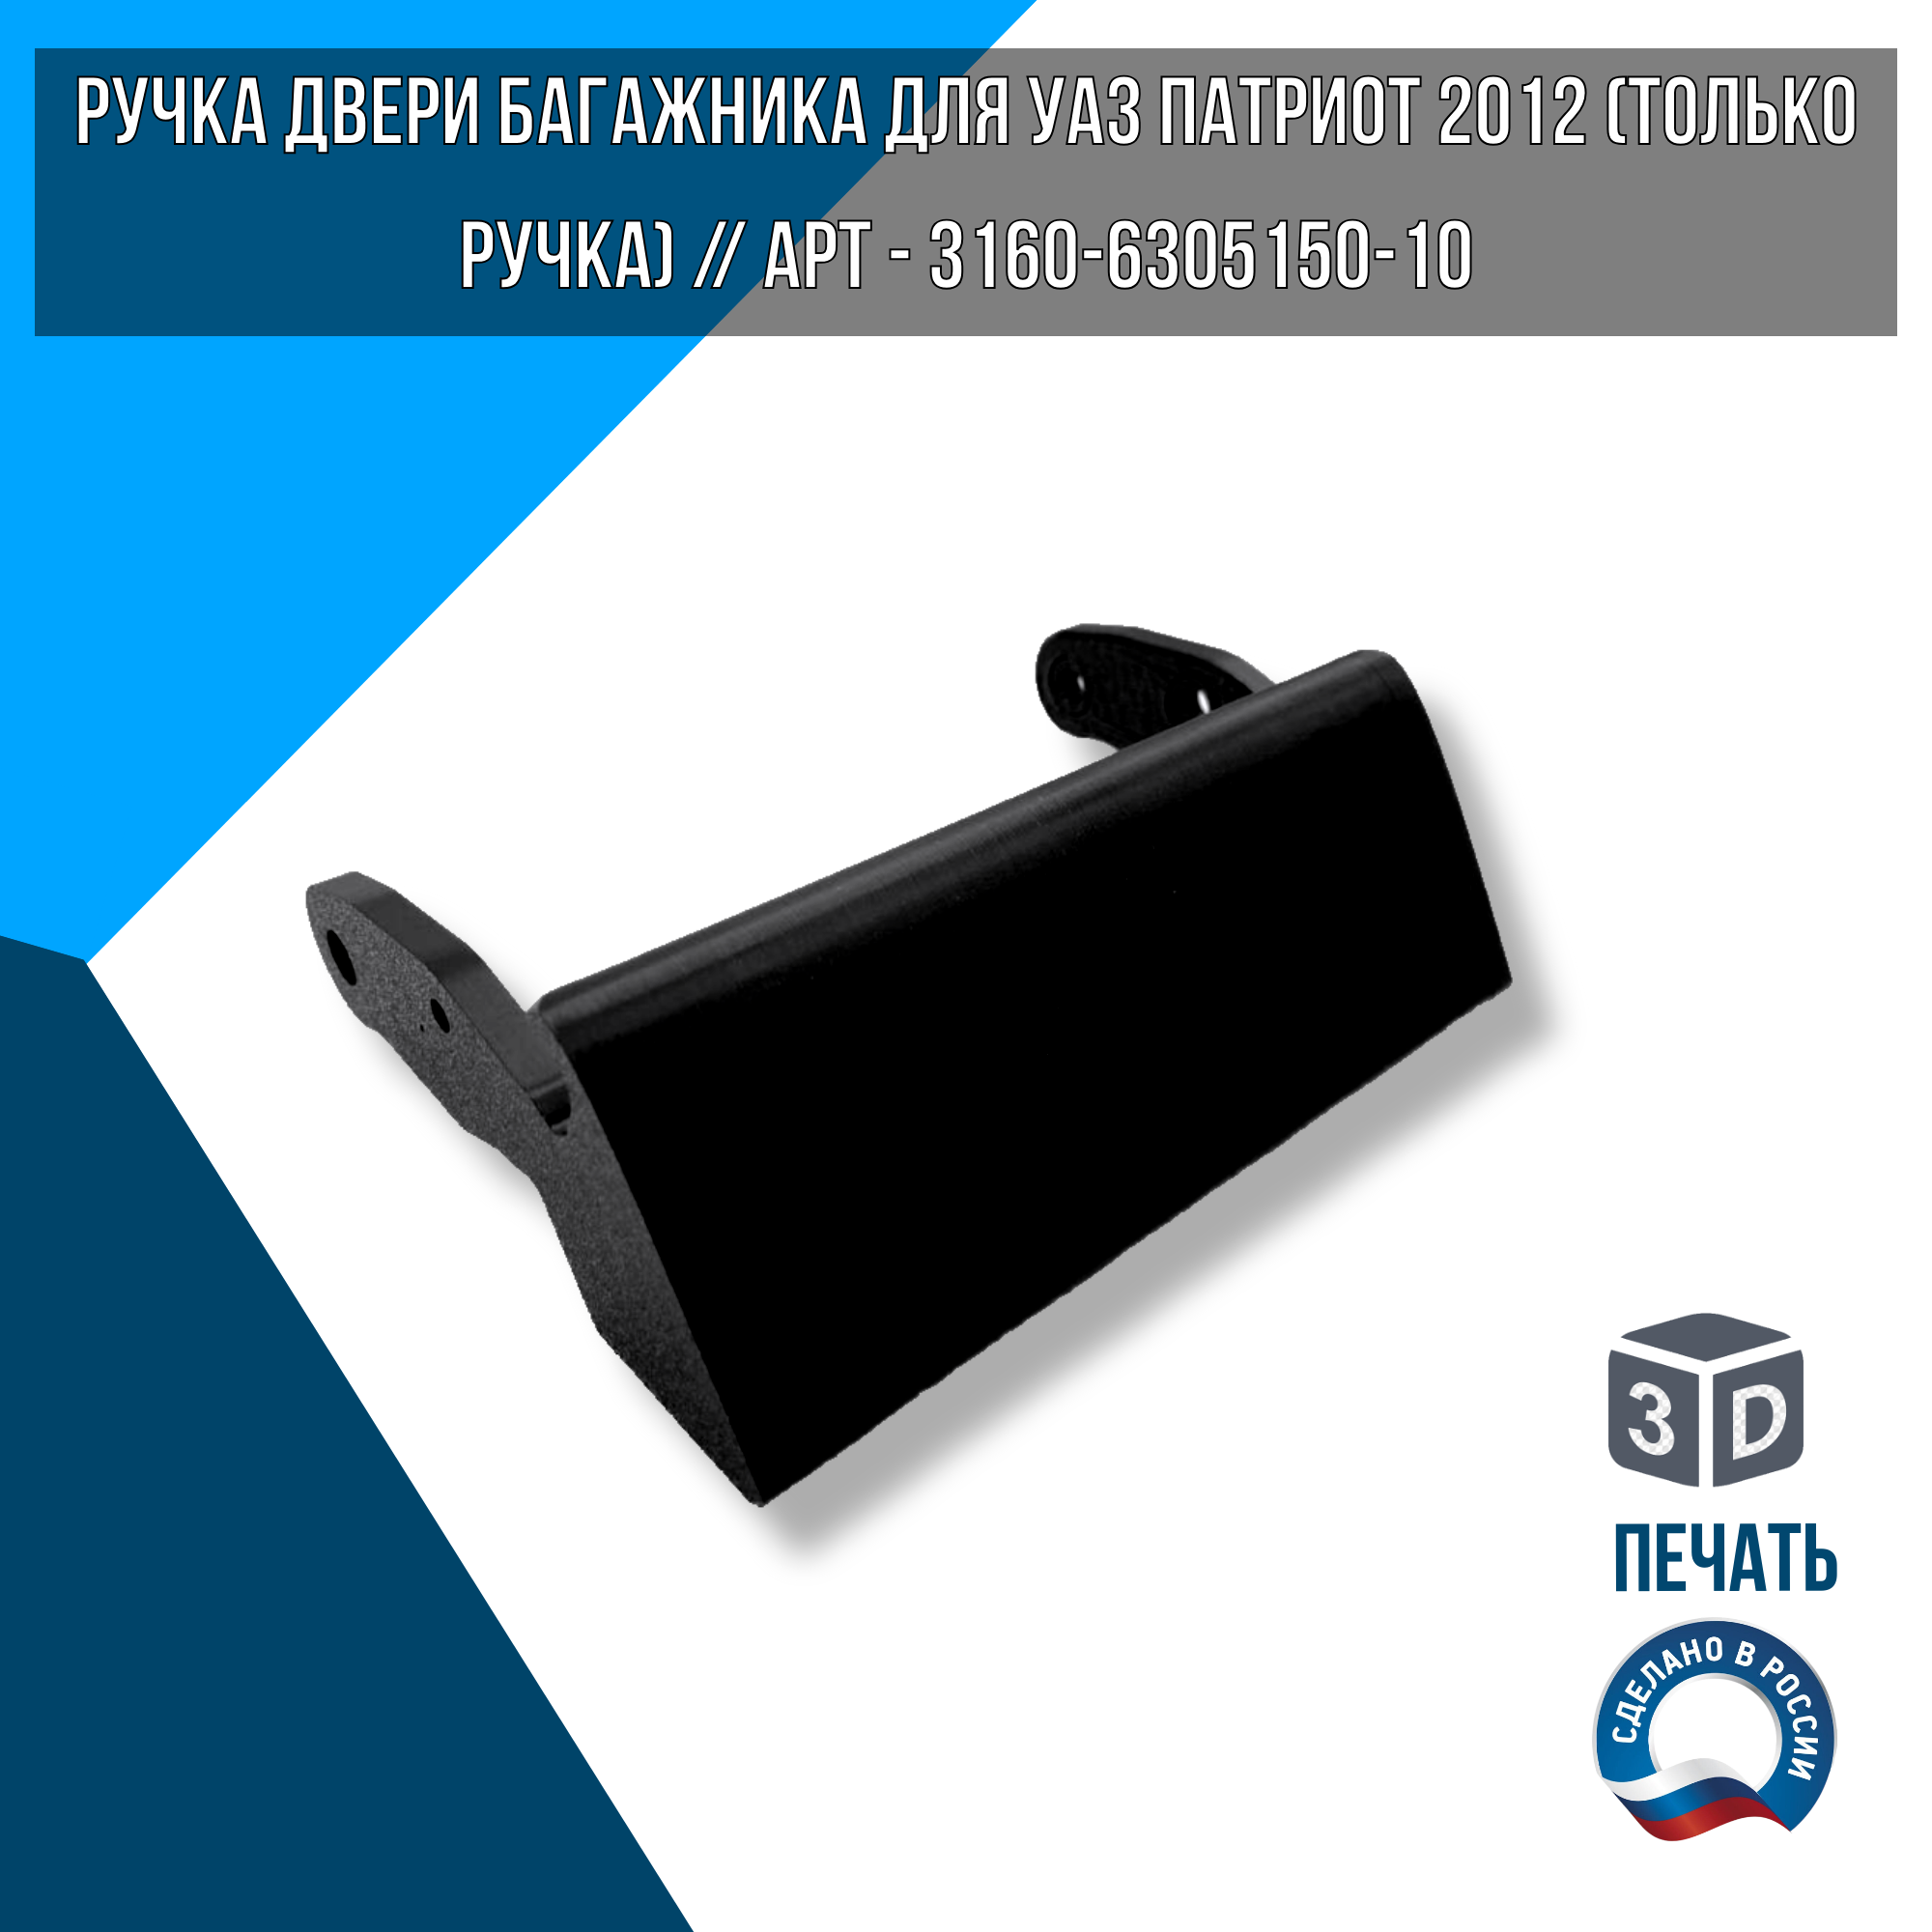 Ручка двери багажника для УАЗ Патриот 2012 (Только ручка) // Арт - 3160-6305150-10